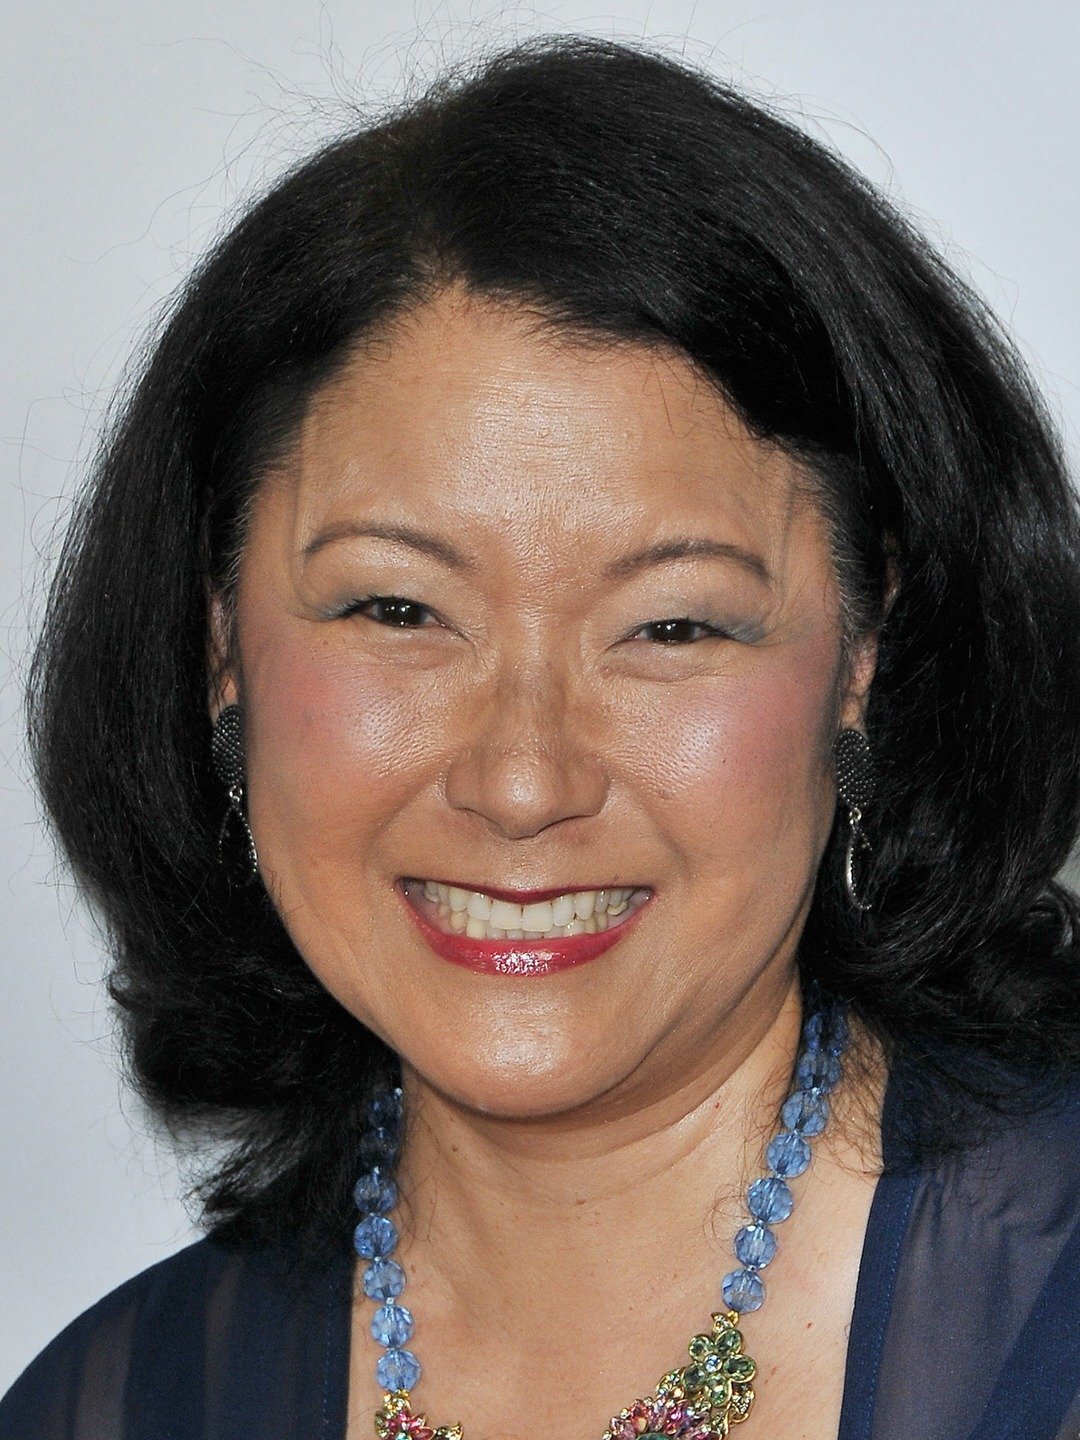 Patti Yasutake